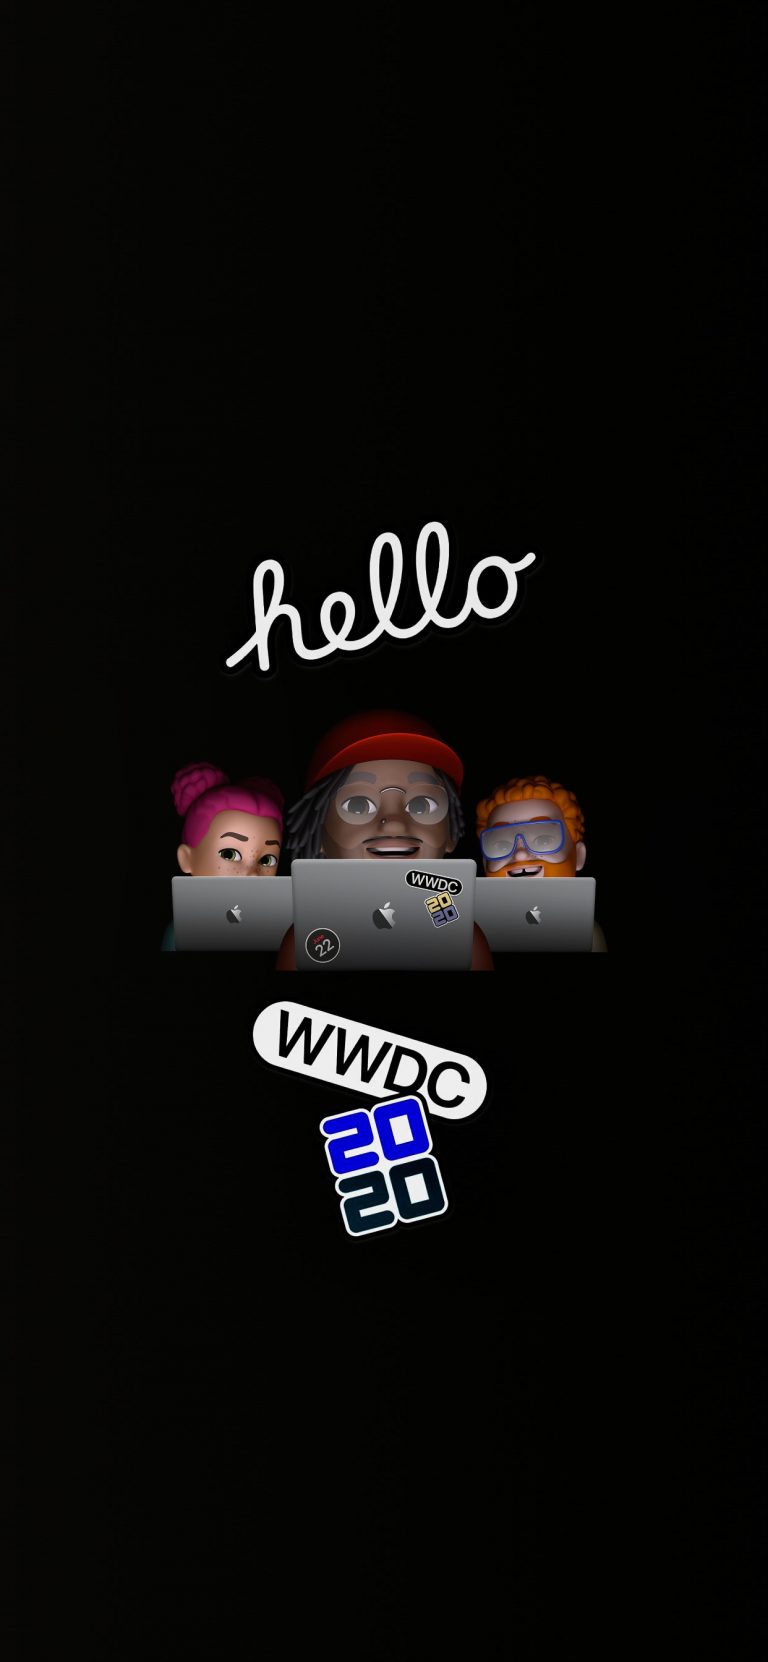 دانلود والپیپر مراسم WWDC 2020 اپل برای آیفون ۱